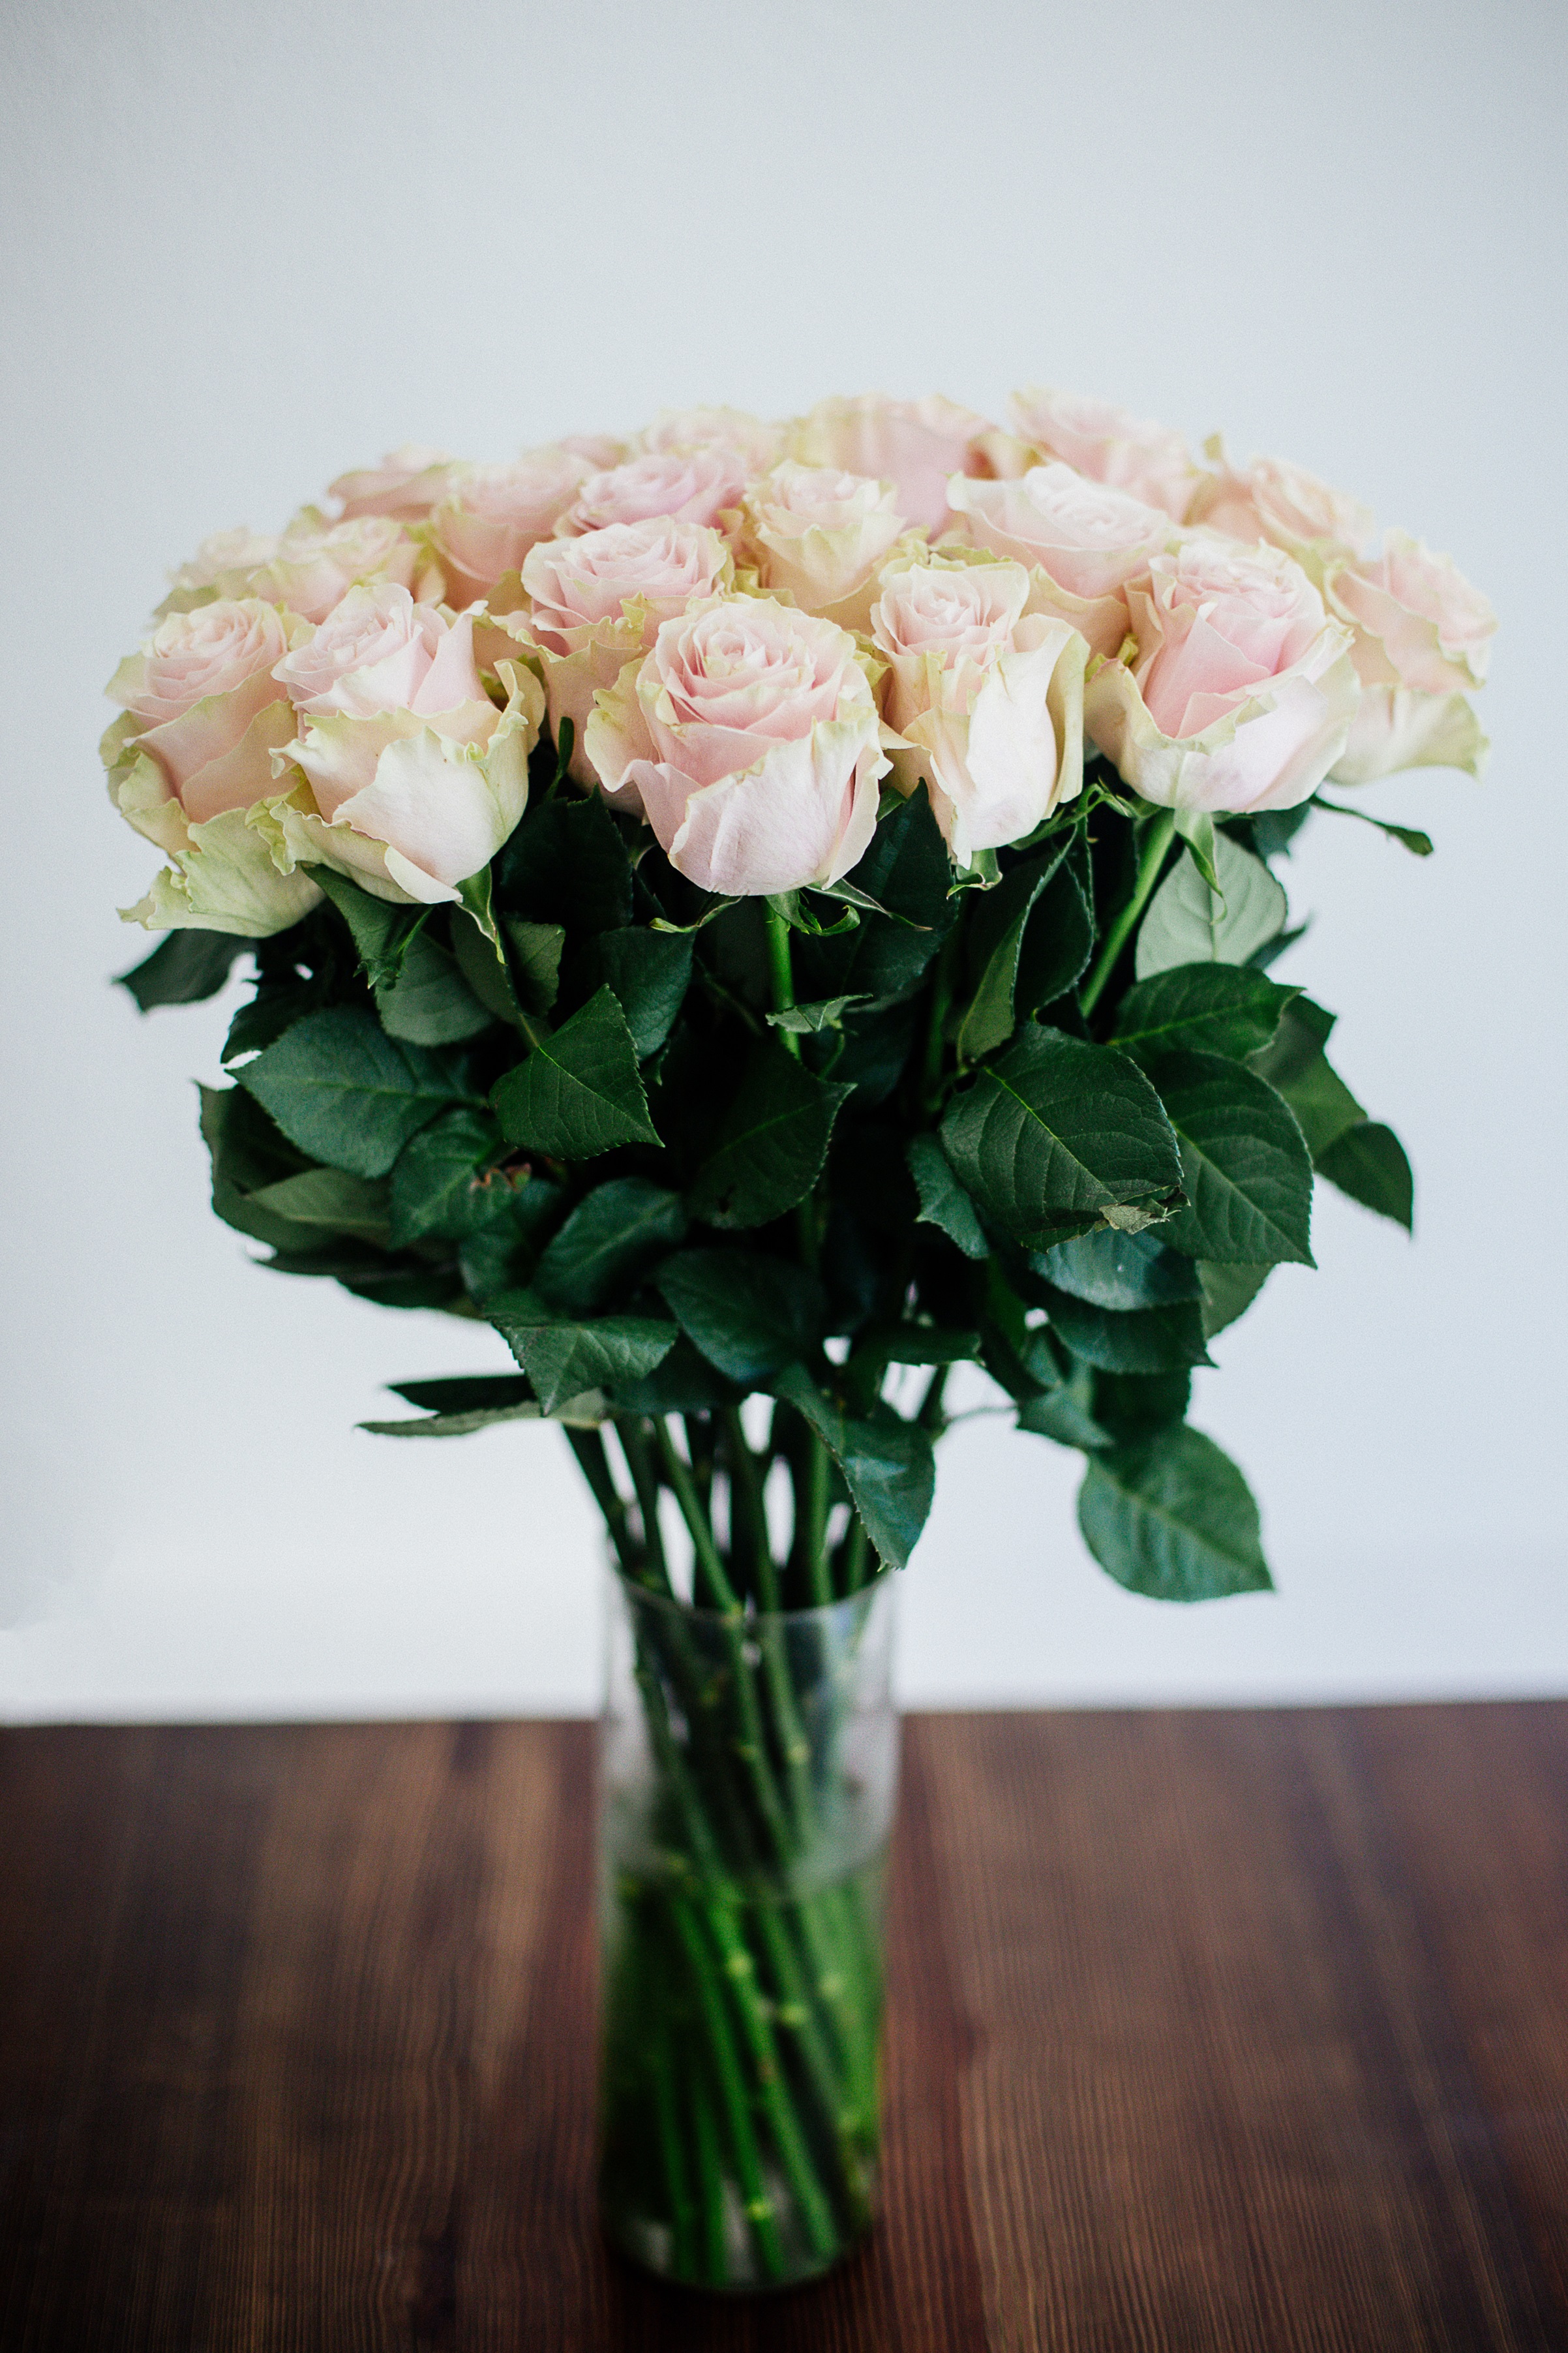 Рак<br />
<br />
Белите рози имат една определена чистота, която свързваме с тях, същата, която имат и хората, родени под знака на Рака. Те са сладки, любящи и изключително грижовни по природа и имат намек за меланхолия в израженията си. Белие цветя като цяло са идеални за хората от зодия Рак.<br />
<br />
Други цветя, подходящи за Рак: бял лотус, бяла лилия, южна магнолия